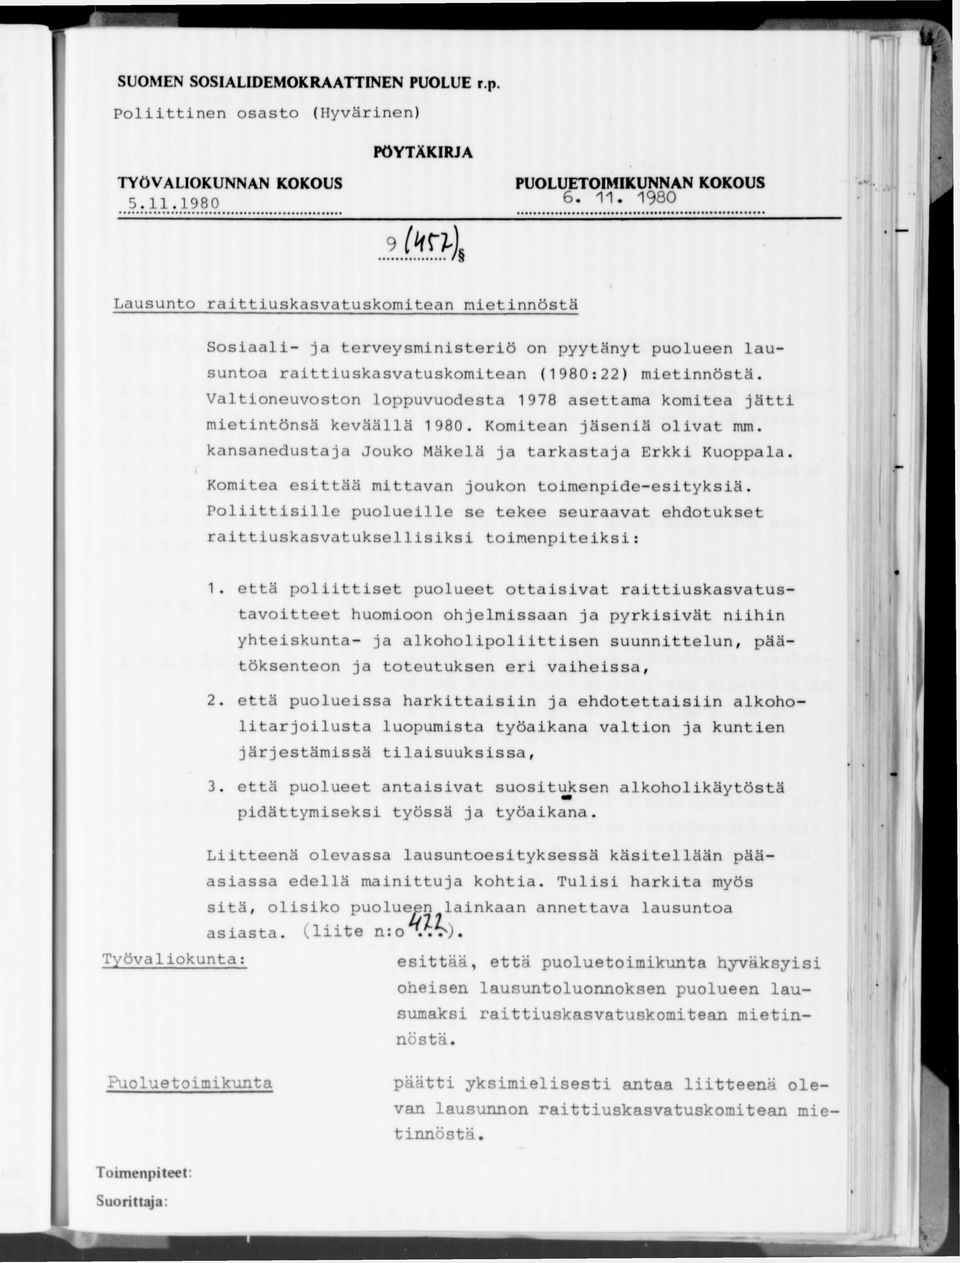 Valtioneuvoston loppuvuodesta 1978 asettama komitea jätti mietintönsä keväällä 1980. Komitean jäseniä olivat mm. kansanedustaja Jouko Mäkelä ja tarkastaja Erkki Kuoppala.